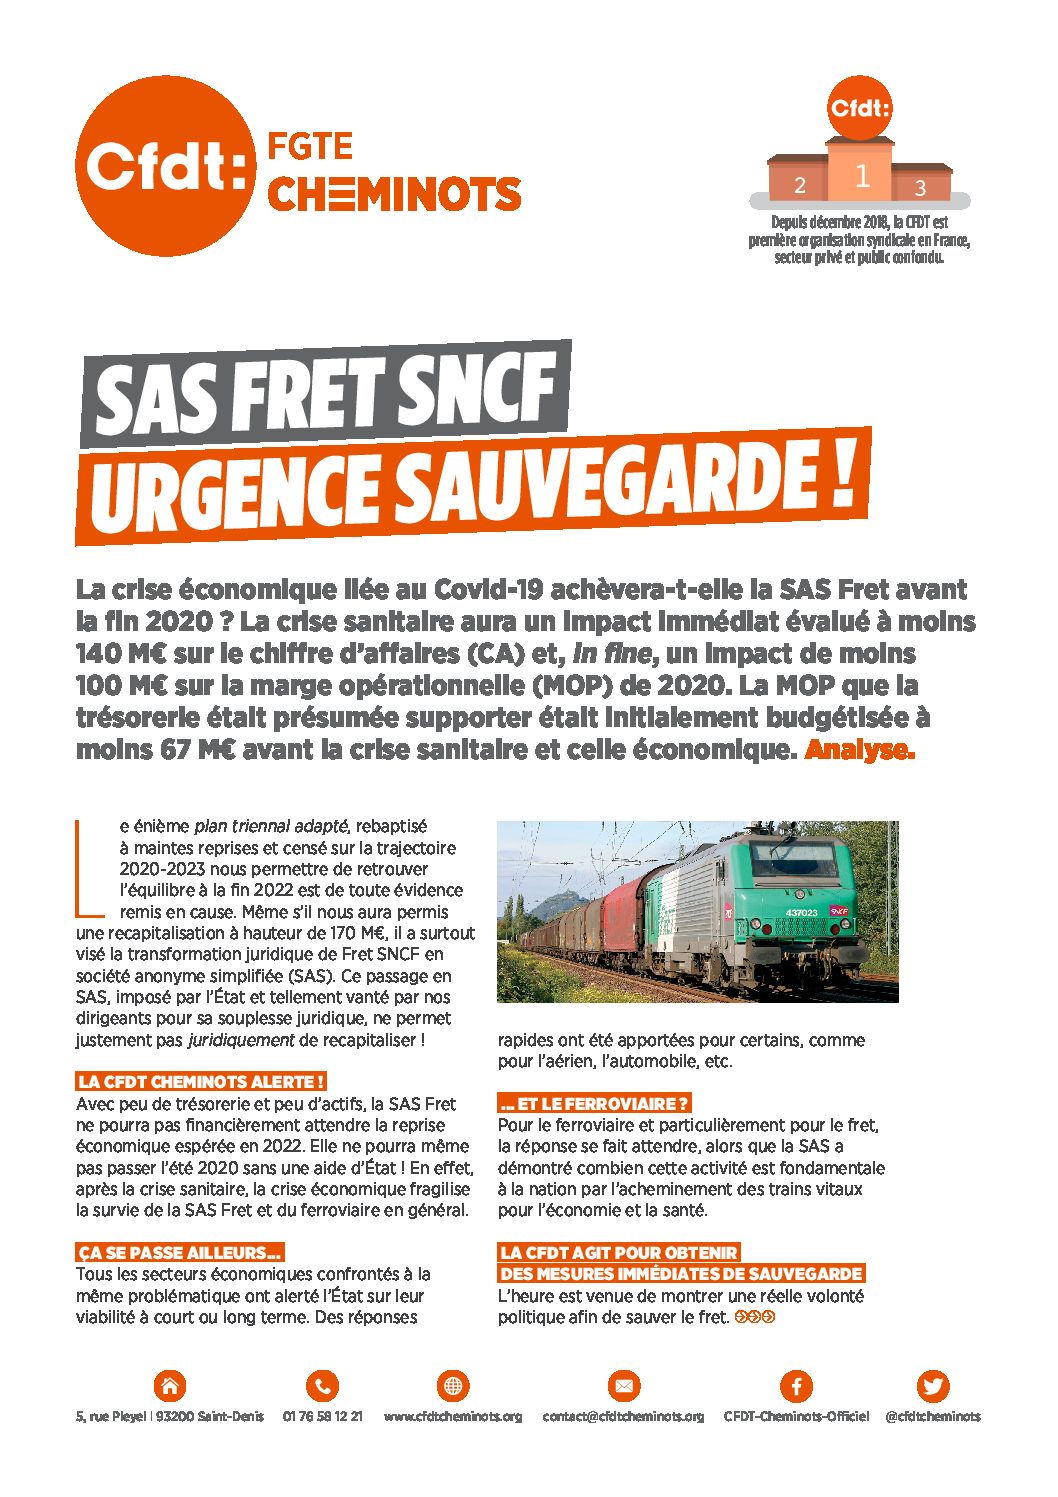 SAS FRET SNCF